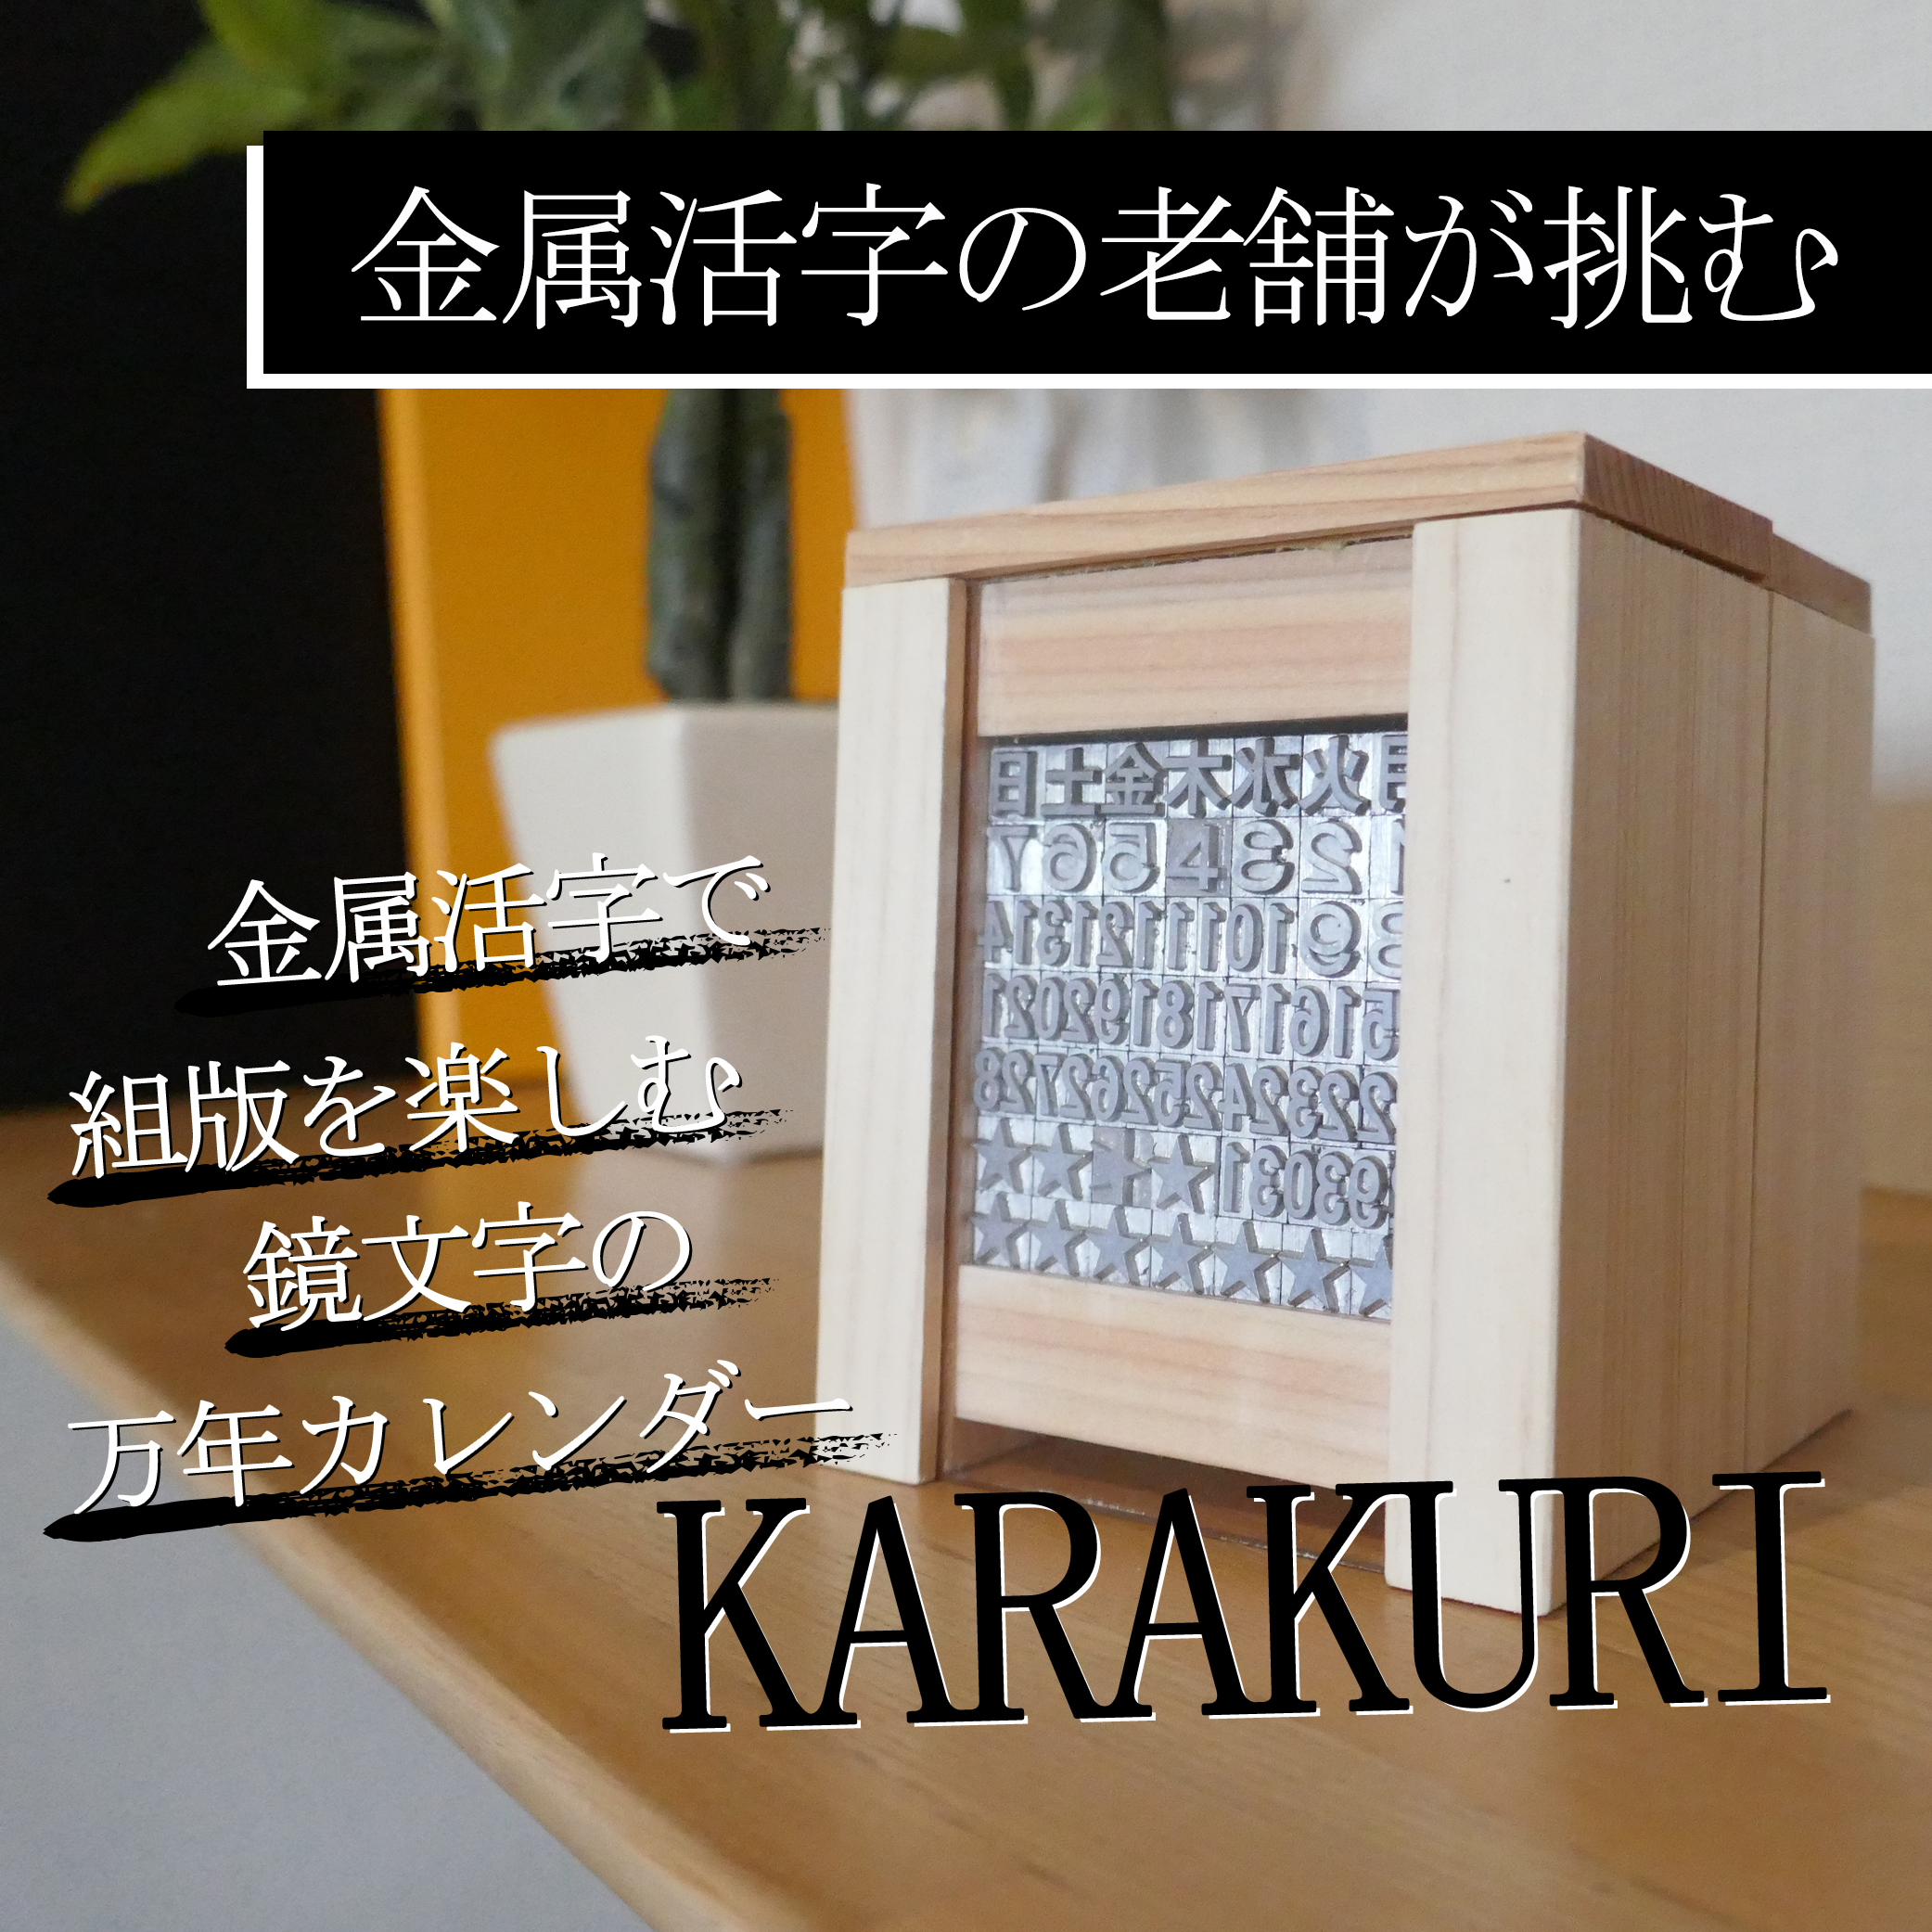 キャンプファイヤー 活字カレンダー「KARAKURI」